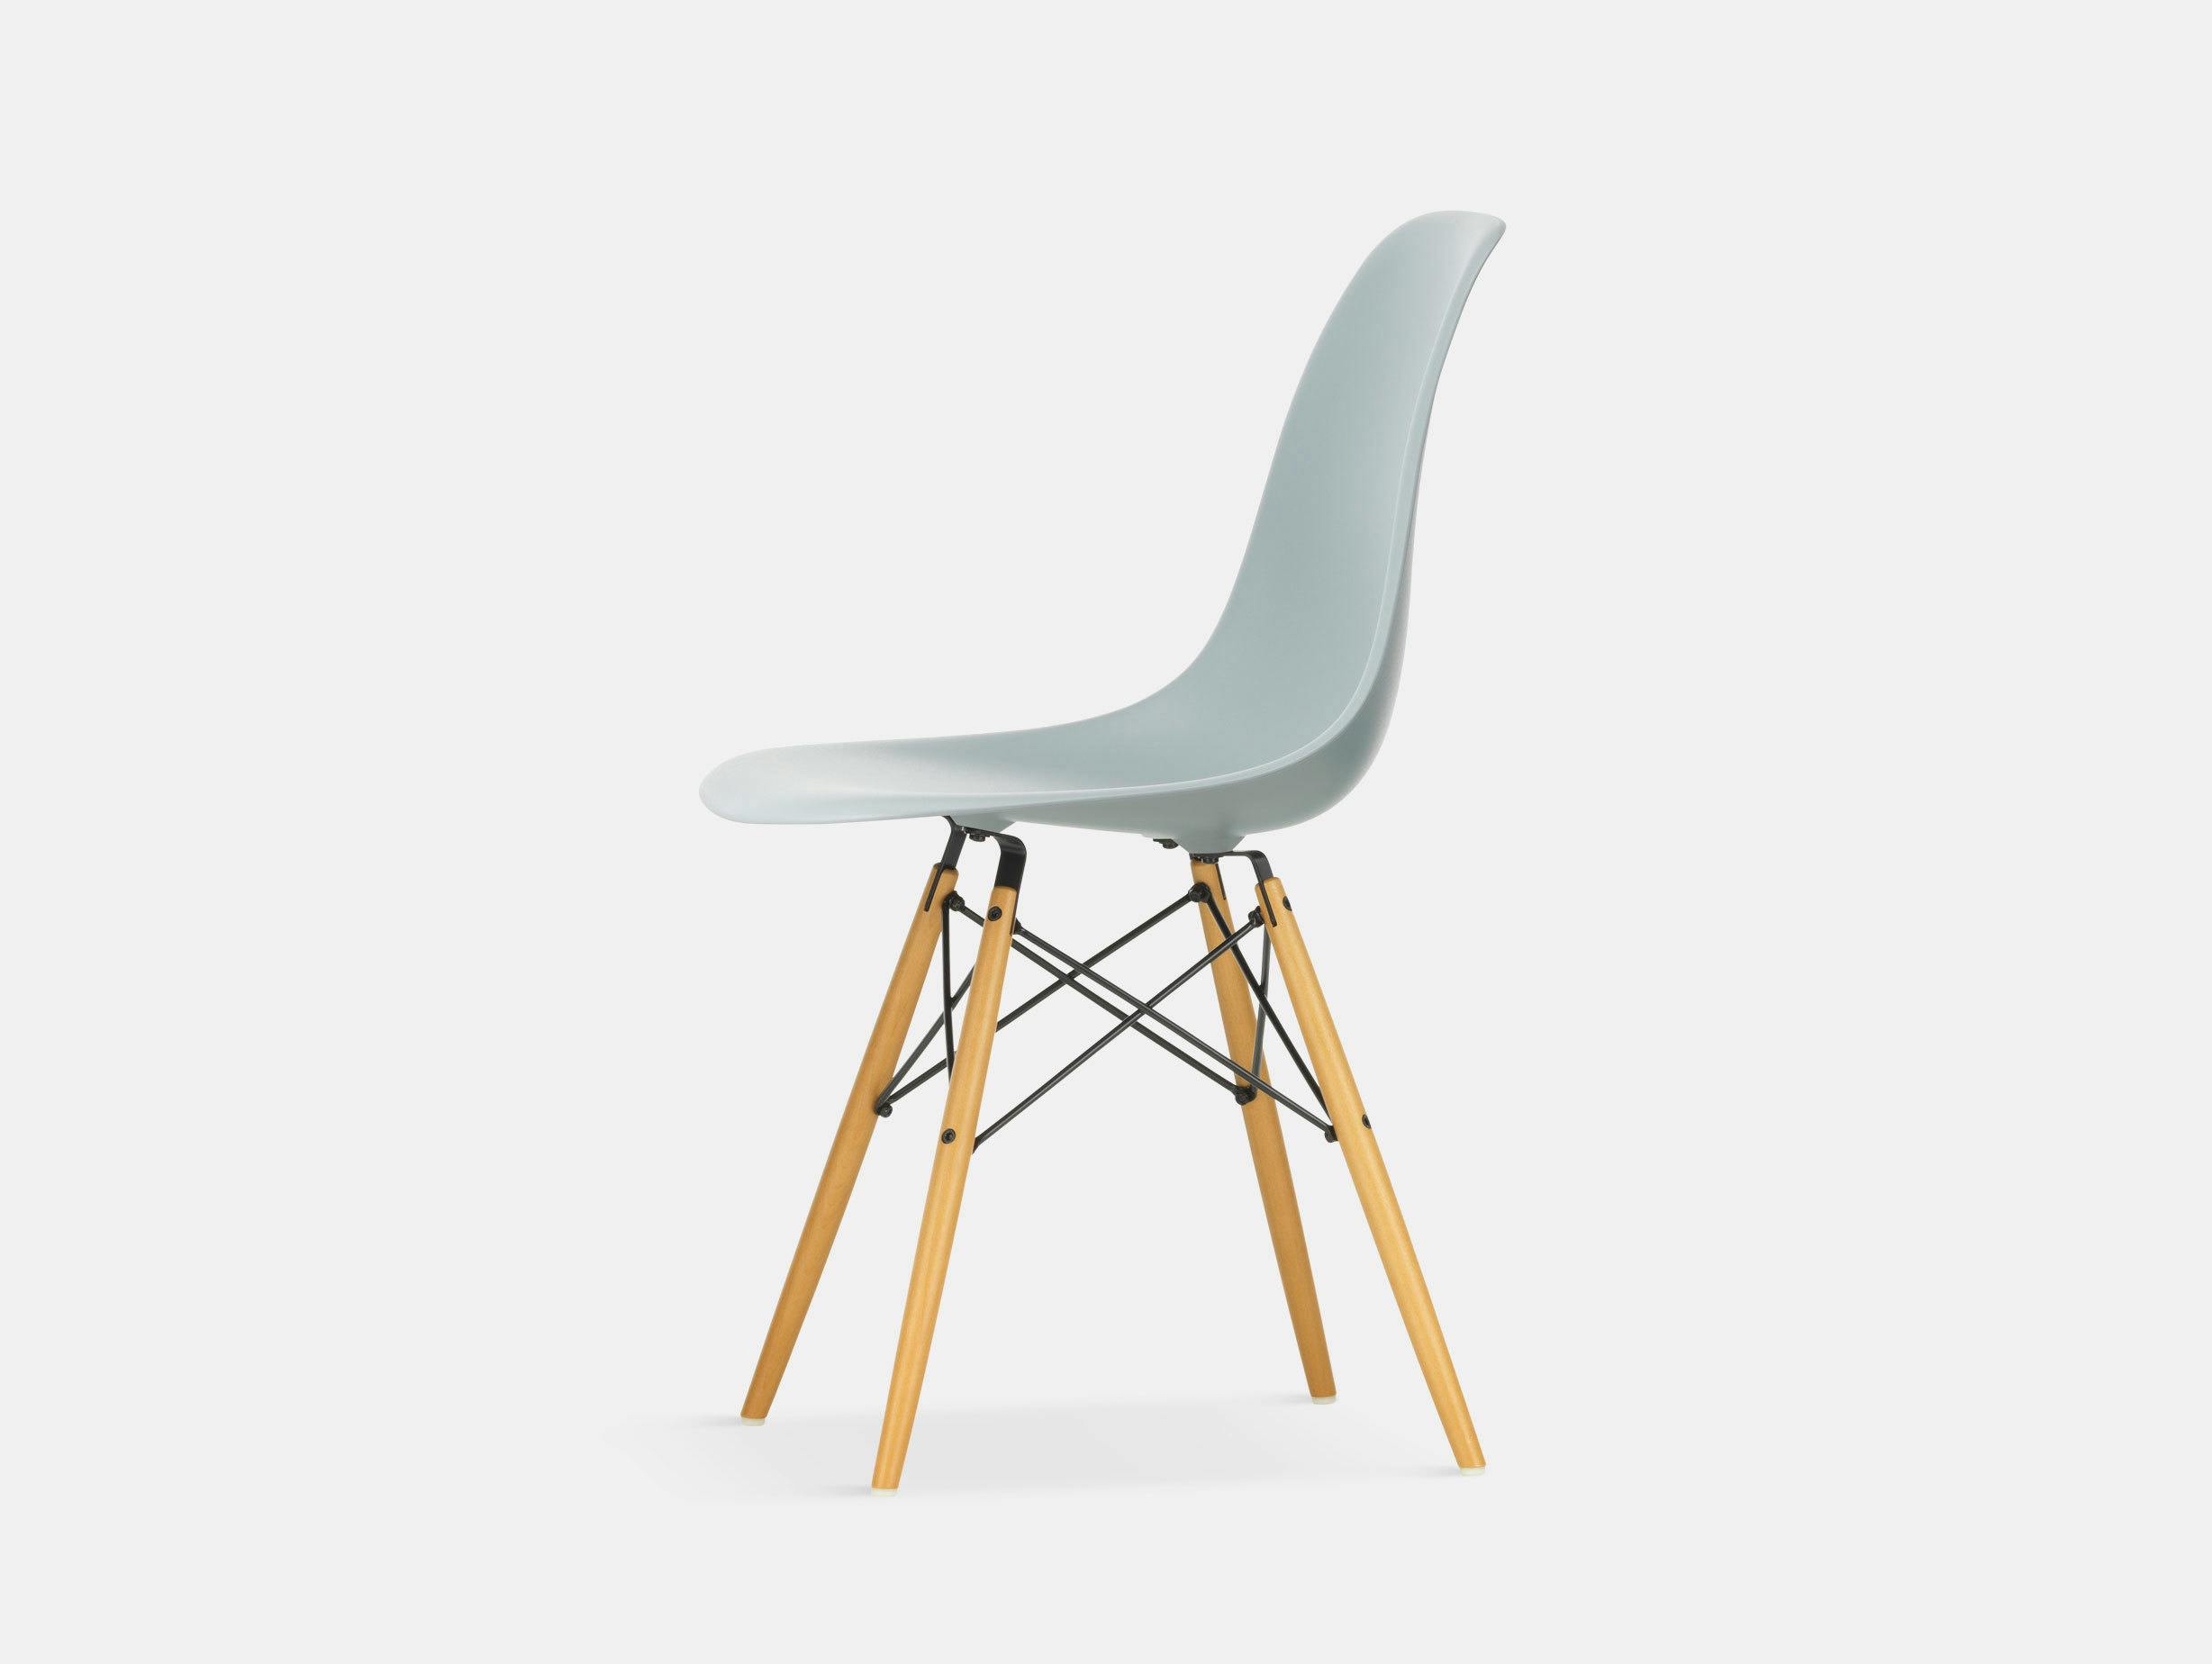 Vitra Eames DSW Plastic Side Chair light grey golden maple legs